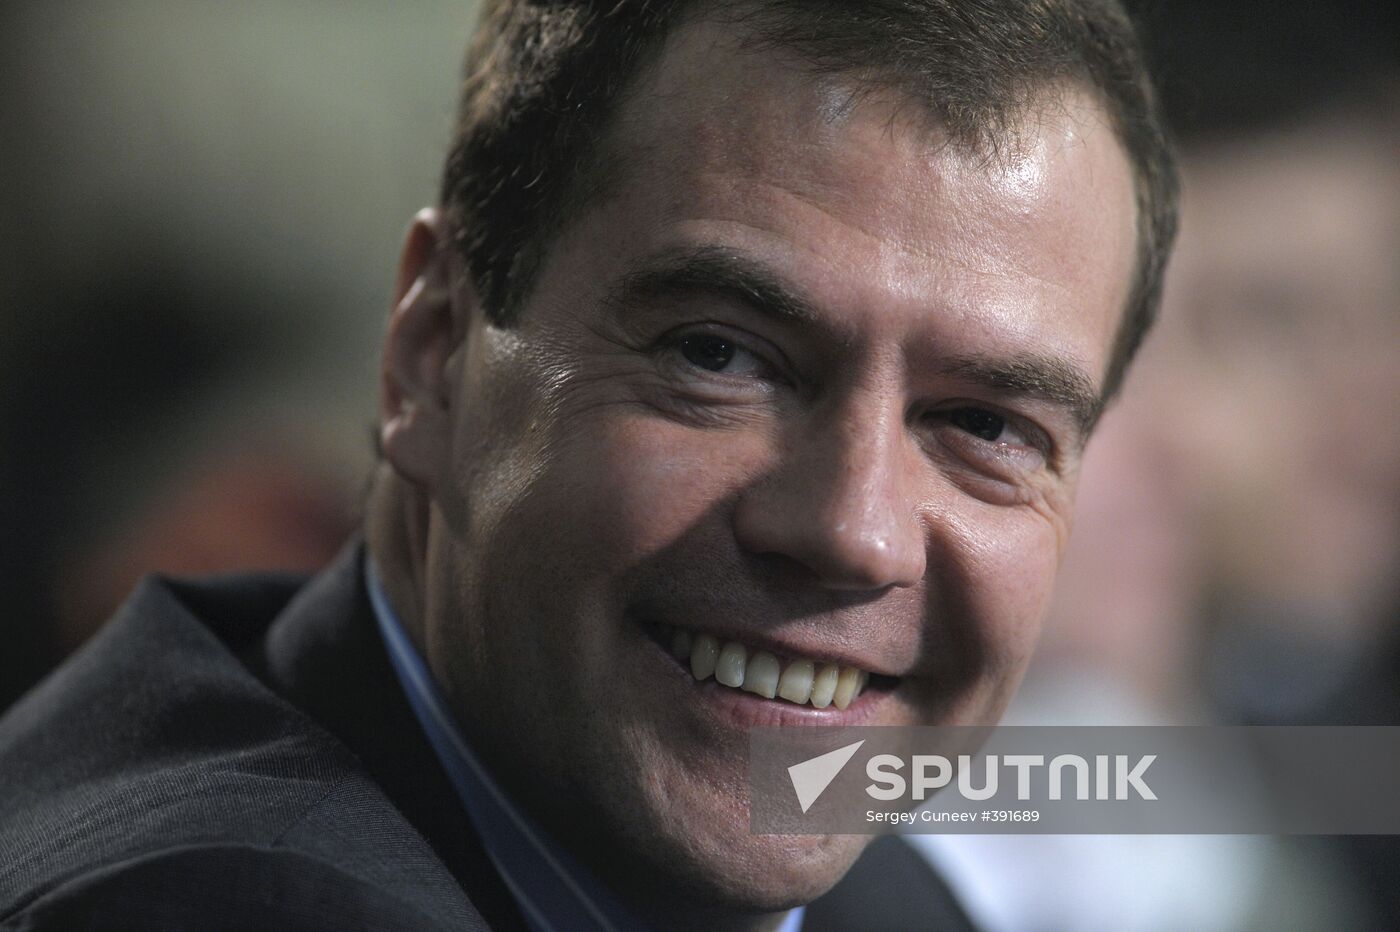 Medvedev held a number of meetings on May 6, 2009